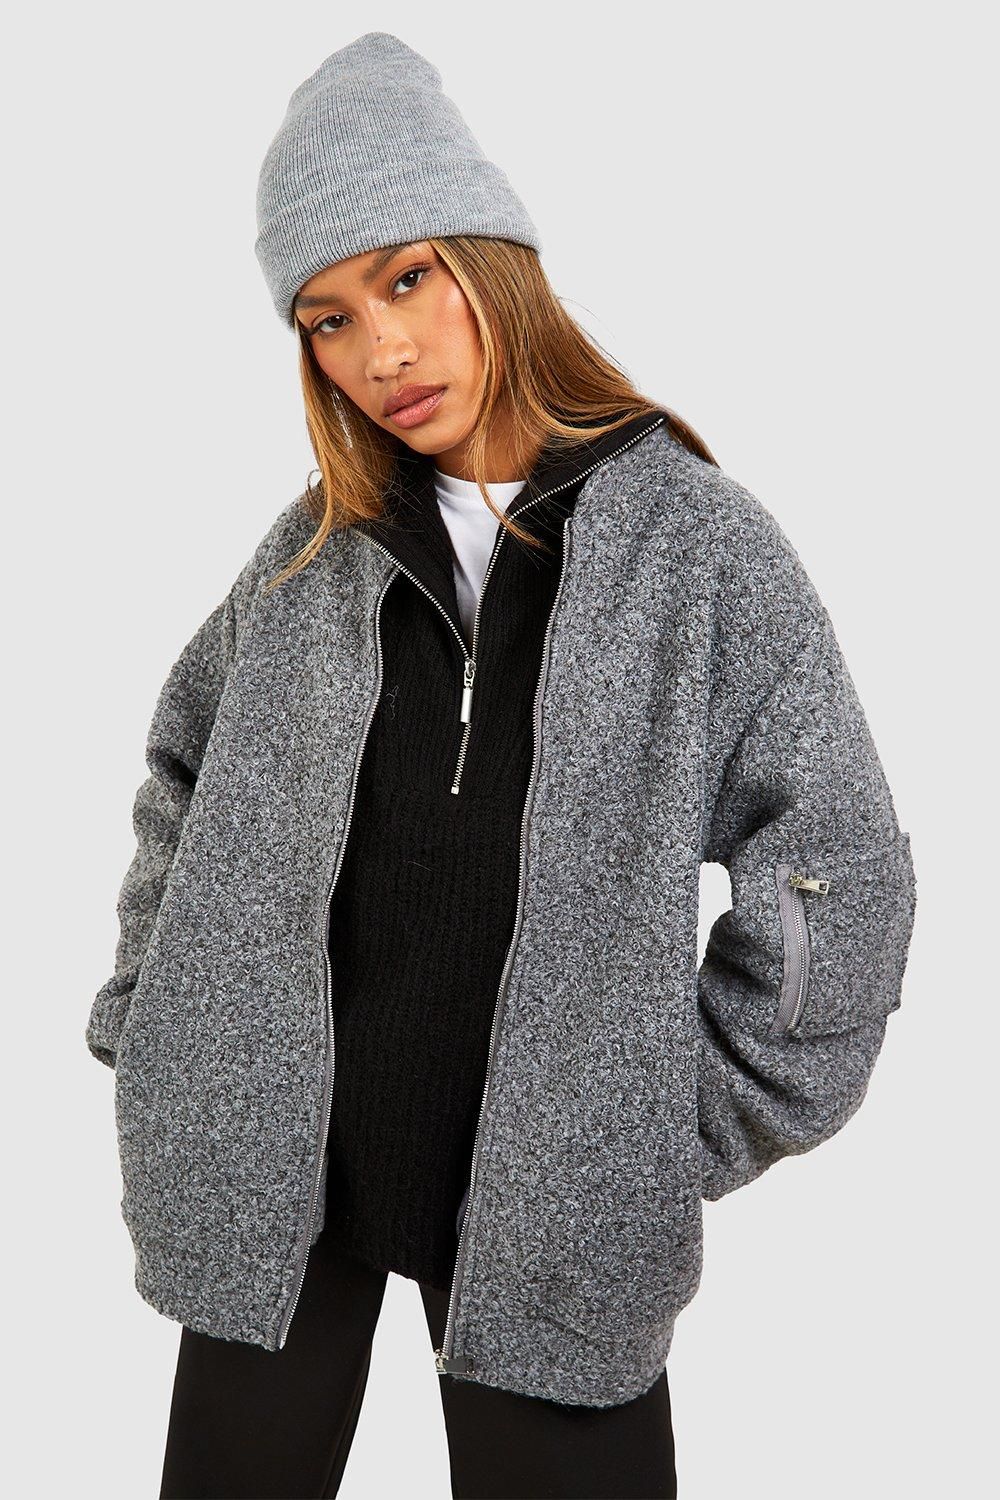 Oversized Boucle Wool Look Bomber Jacket | Debenhams UK